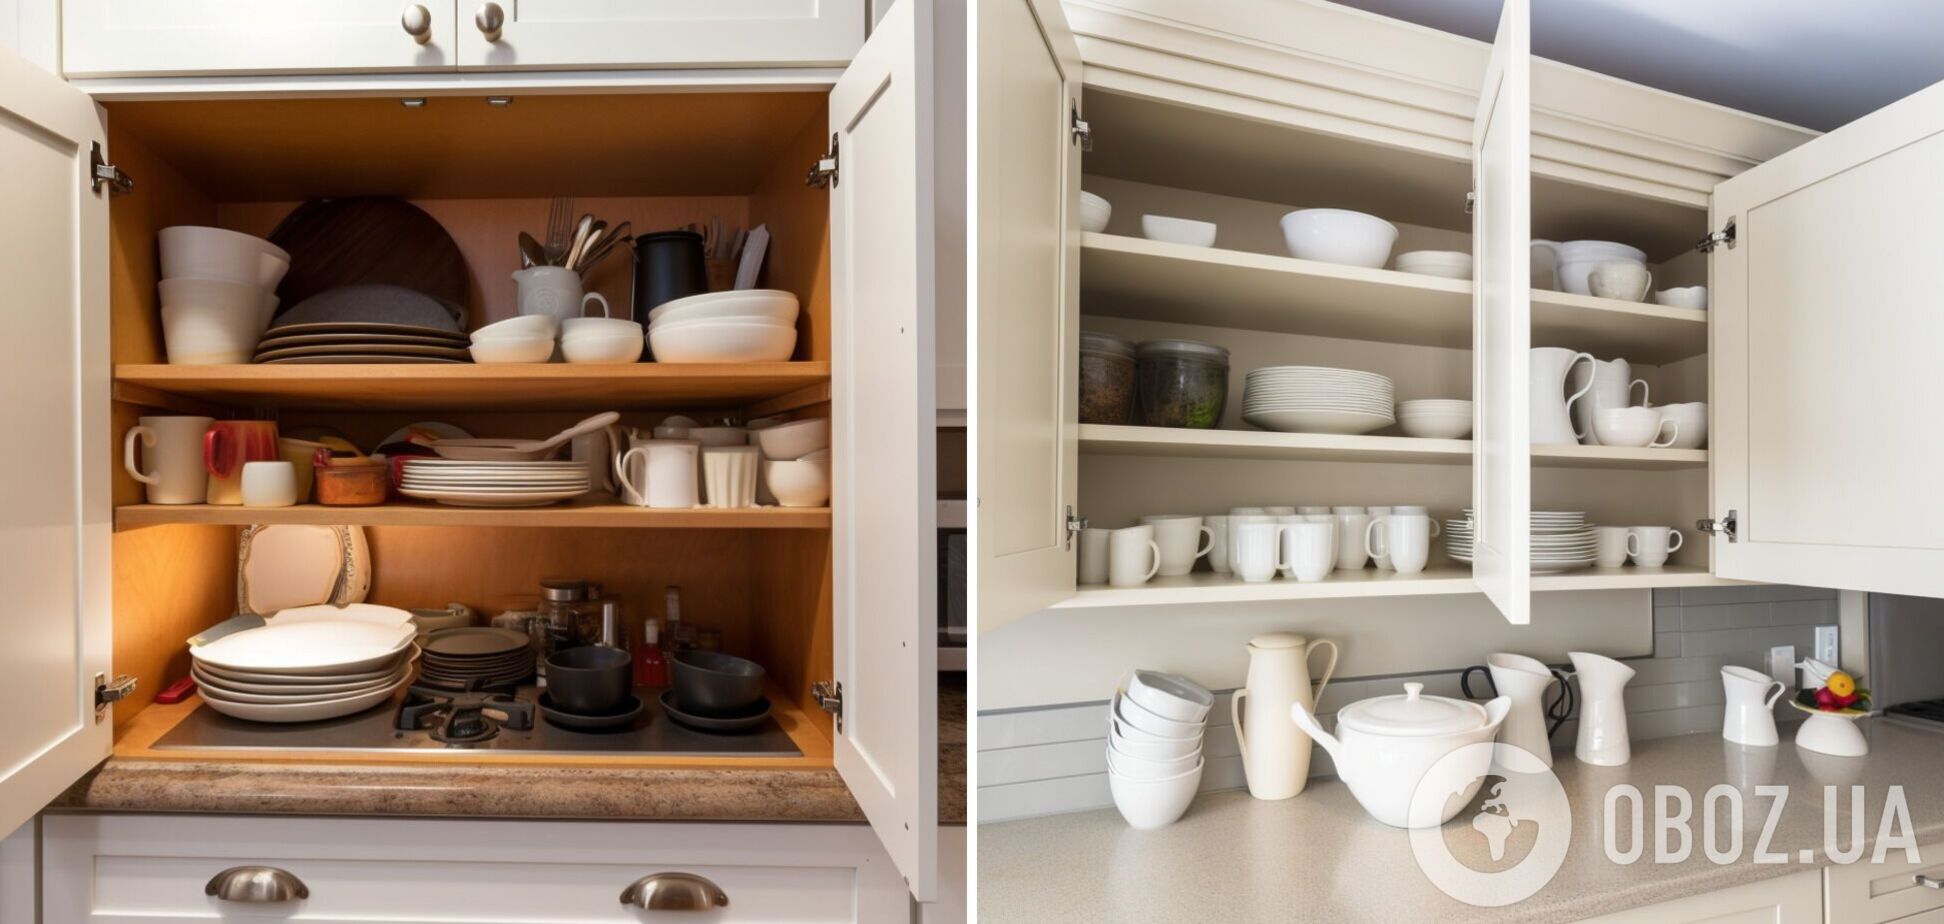 Что положить в кухонные шкафчики, чтобы приятно пахло: простой и дешевый лайфхак